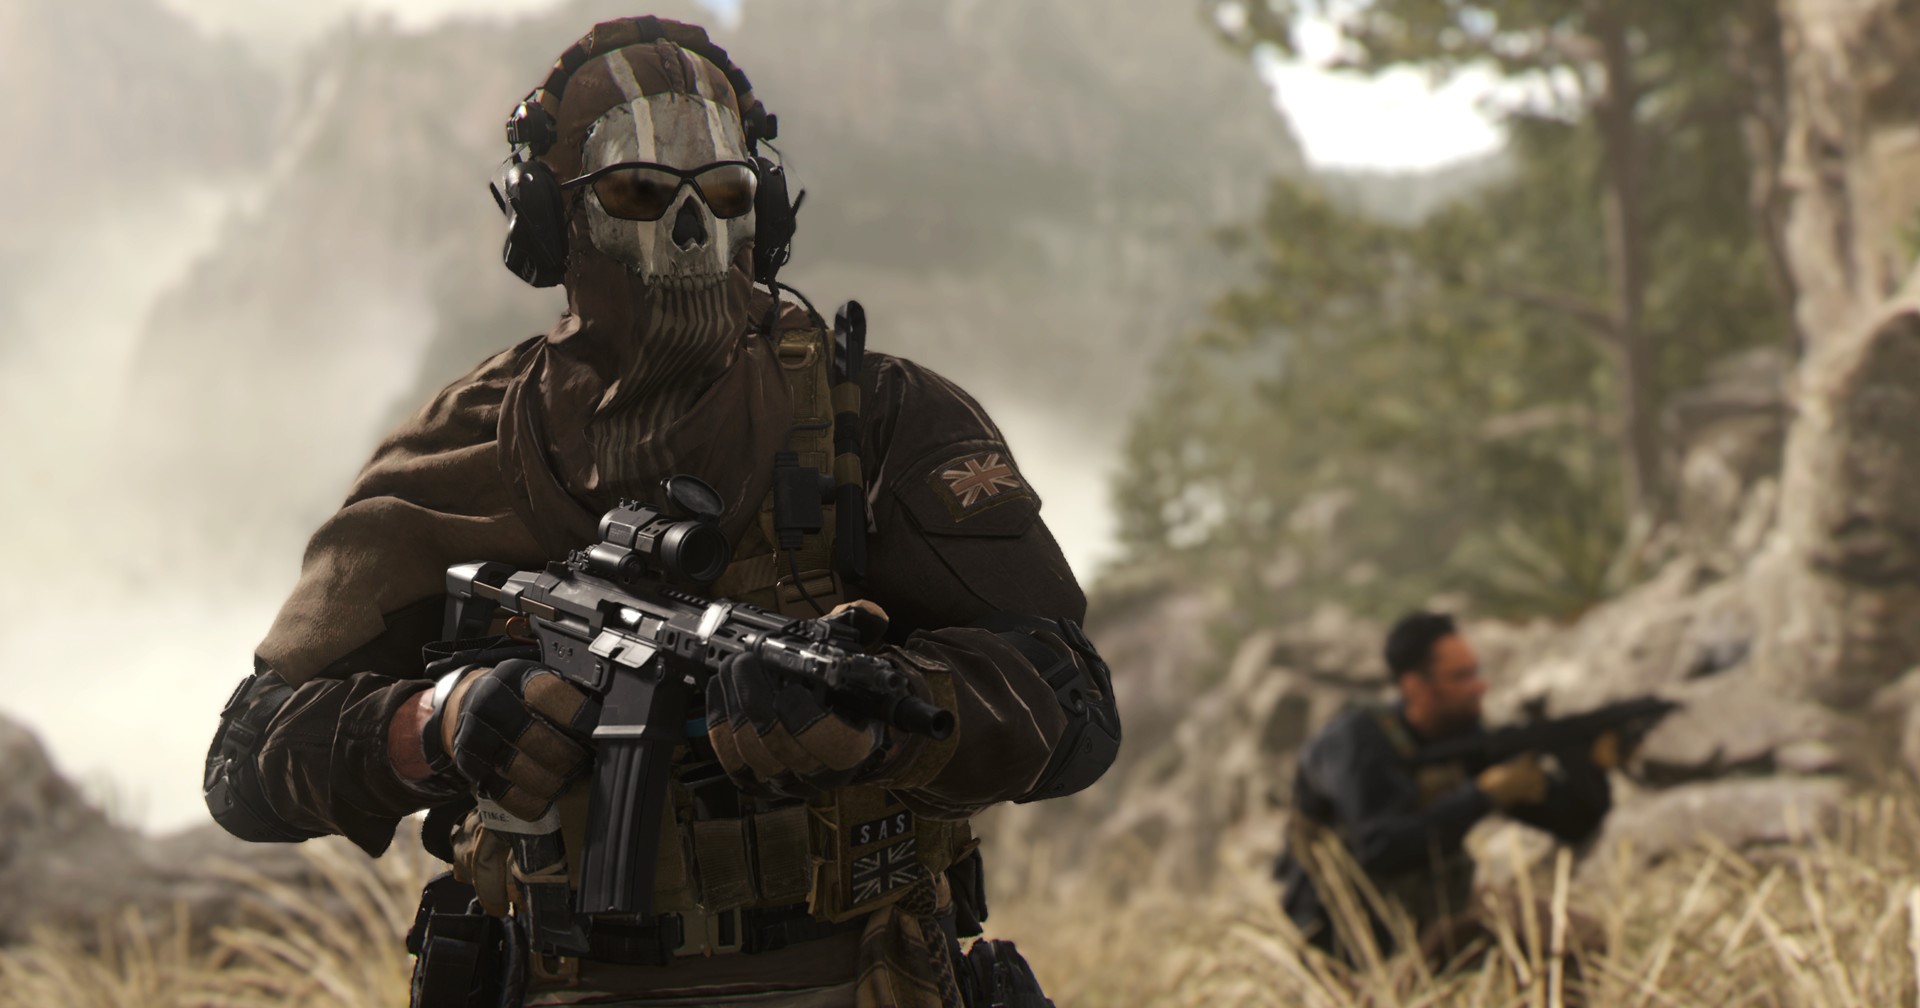 ค่ายเกมผู้พัฒนา Modern Warfare อาจกำลังพัฒนาเกมอาร์พีจีโลกกว้างอยู่